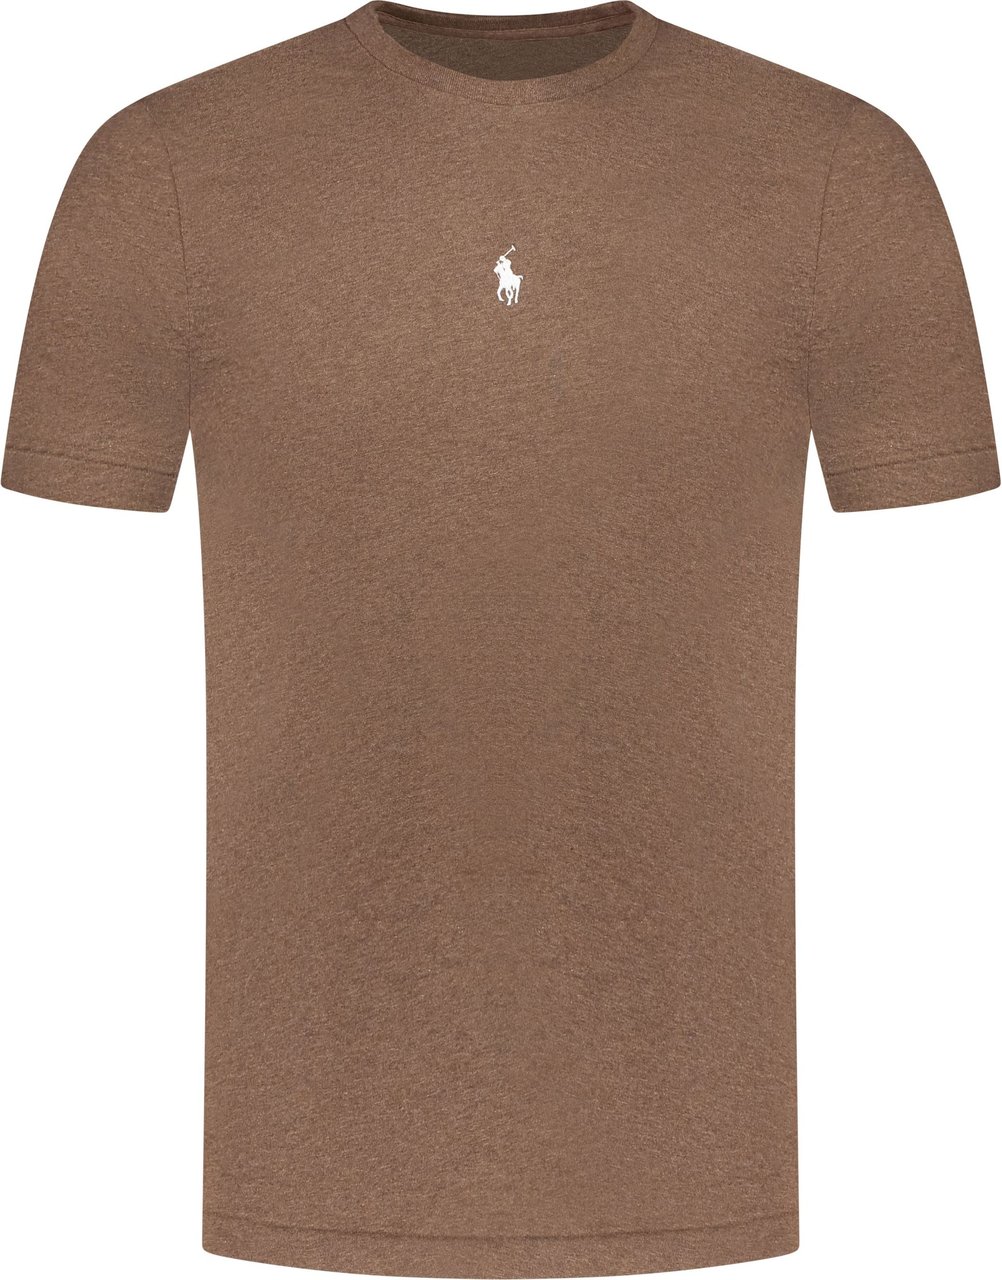 Ralph Lauren Polo T-shirt Bruin Bruin